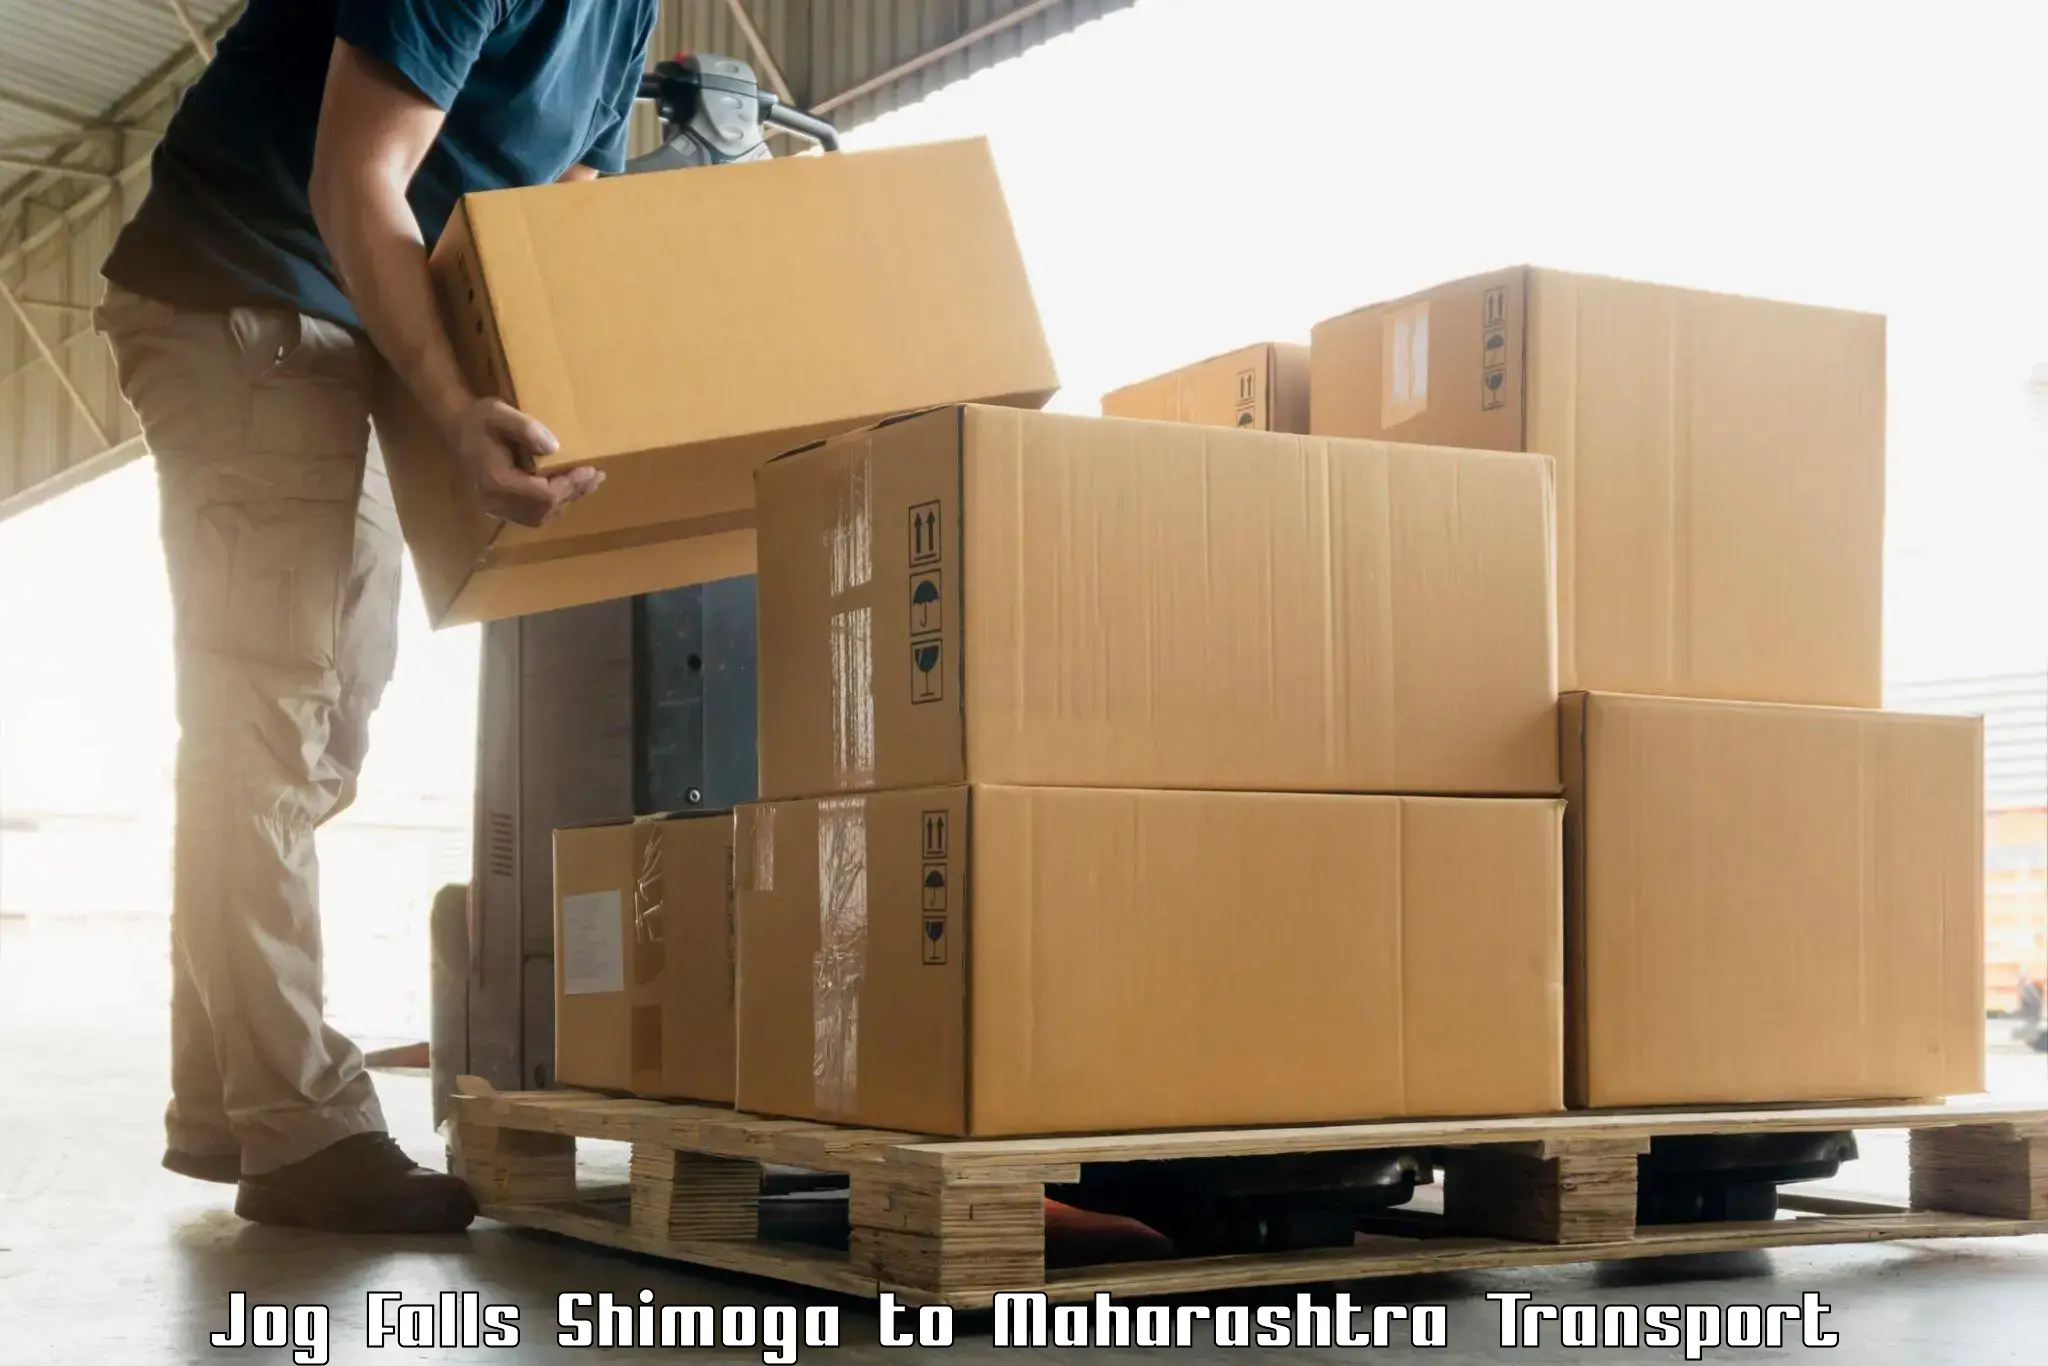 Goods delivery service Jog Falls Shimoga to Kolhapur